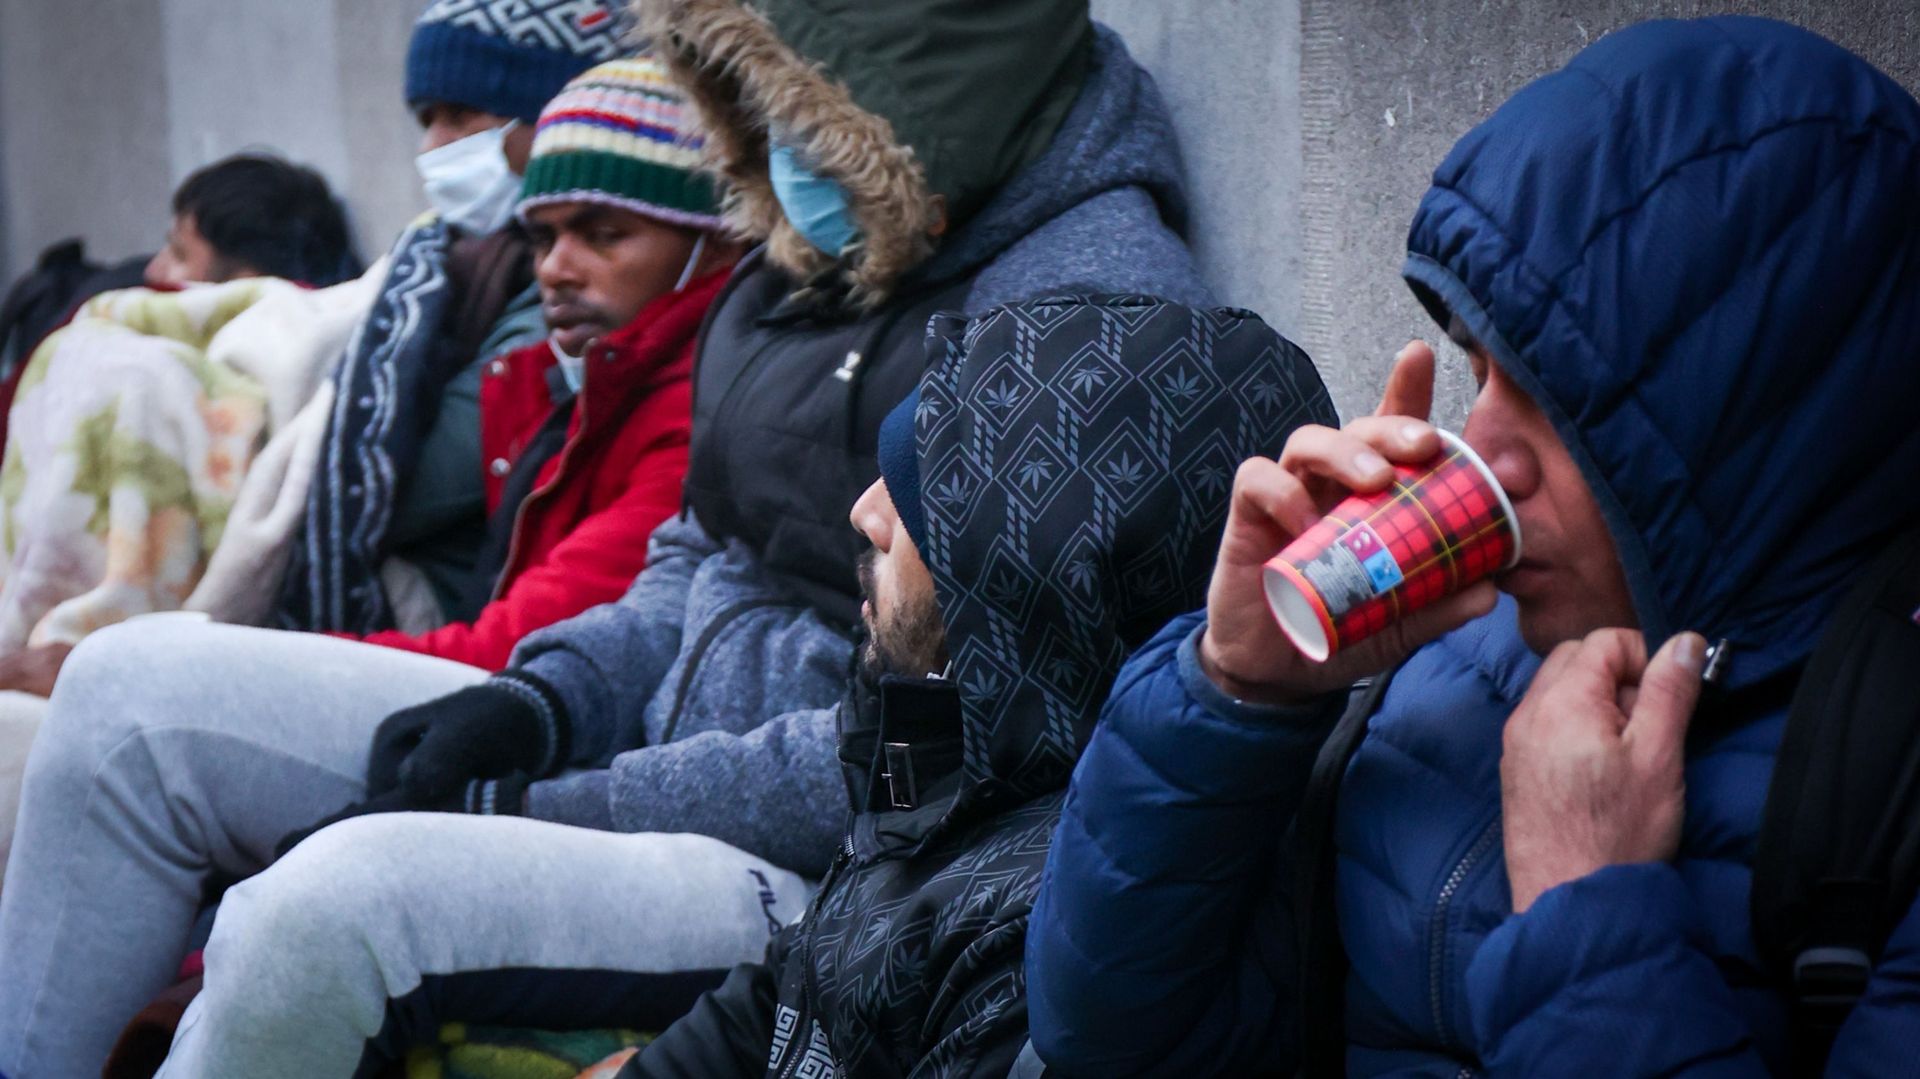 Une illustration montre des réfugiés attendant dehors, dans le froid, à l'entrée du centre d'enregistrement Fedasil "Petit Château" pour demandeurs d'asile à Bruxelles, mardi 07 décembre 2021 (illustration).